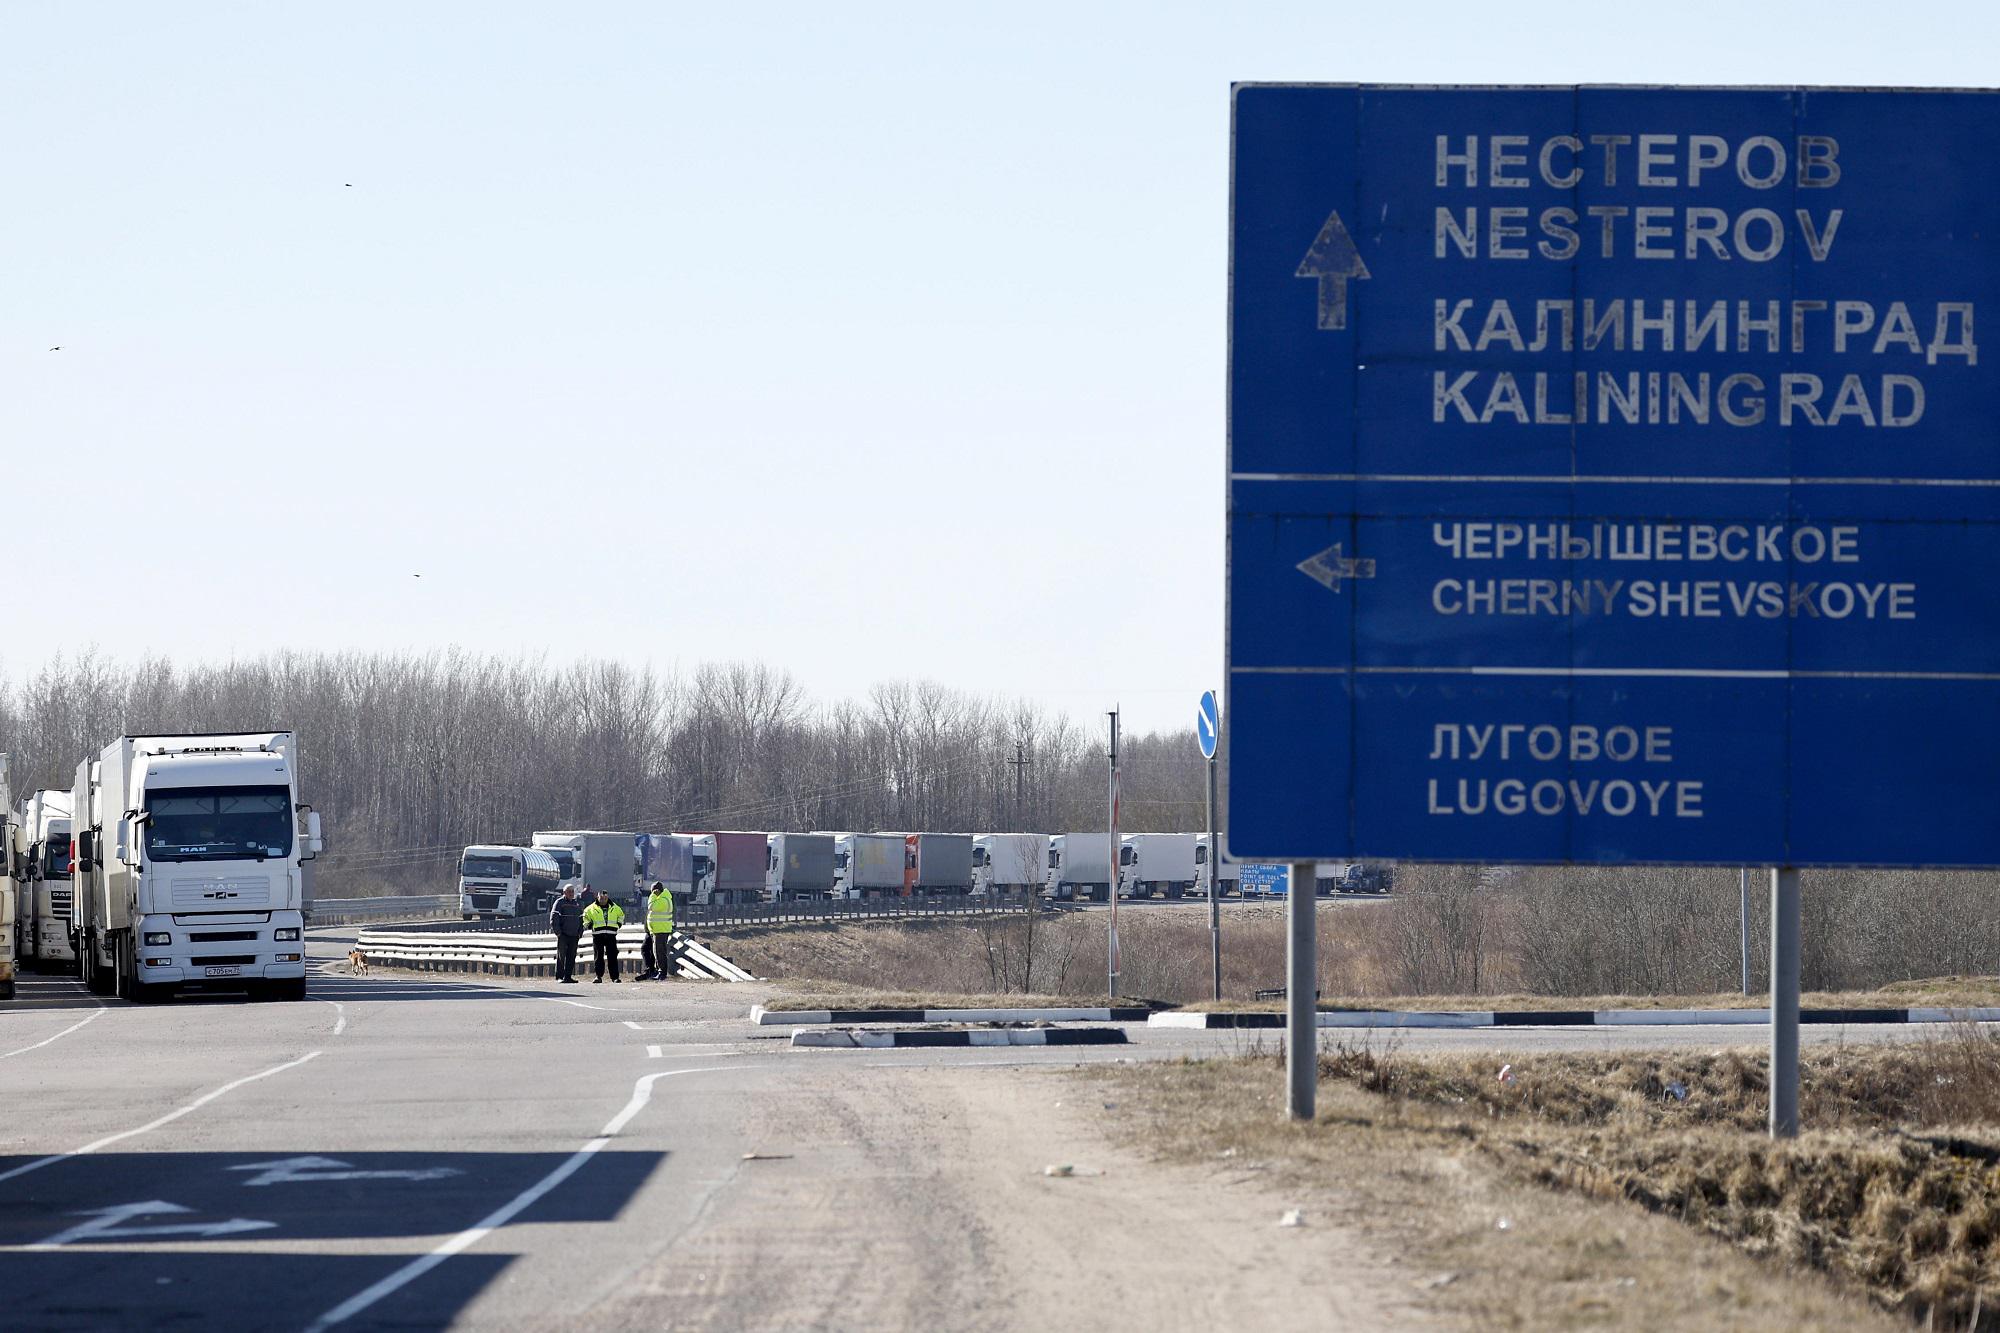 Ucraina, il Cremlino aspetta novità su Kaliningrad: "Che prevalga il buon senso"